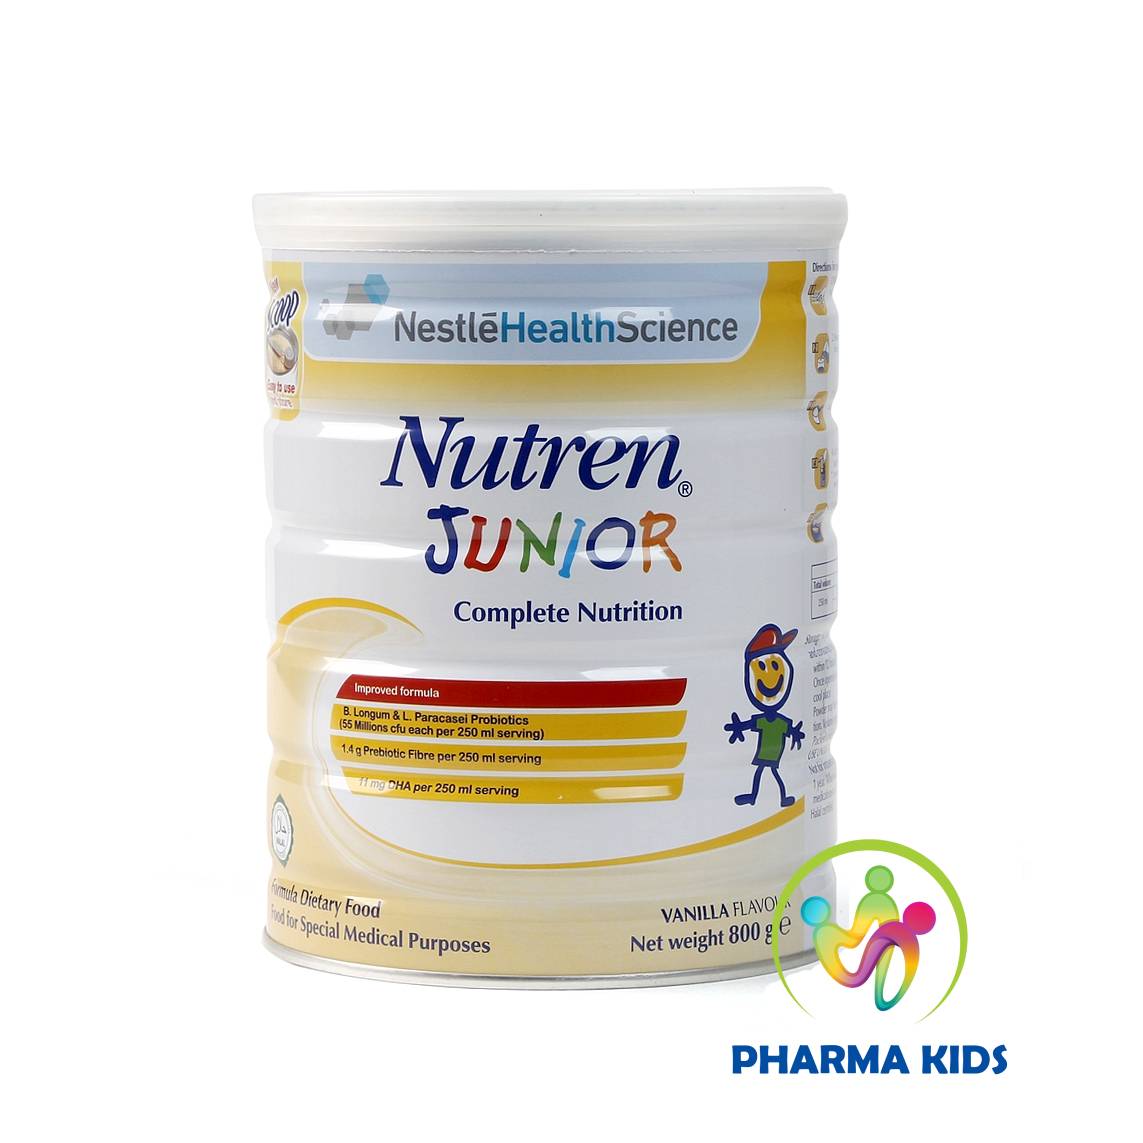 Sữa Nutren Junior 400g